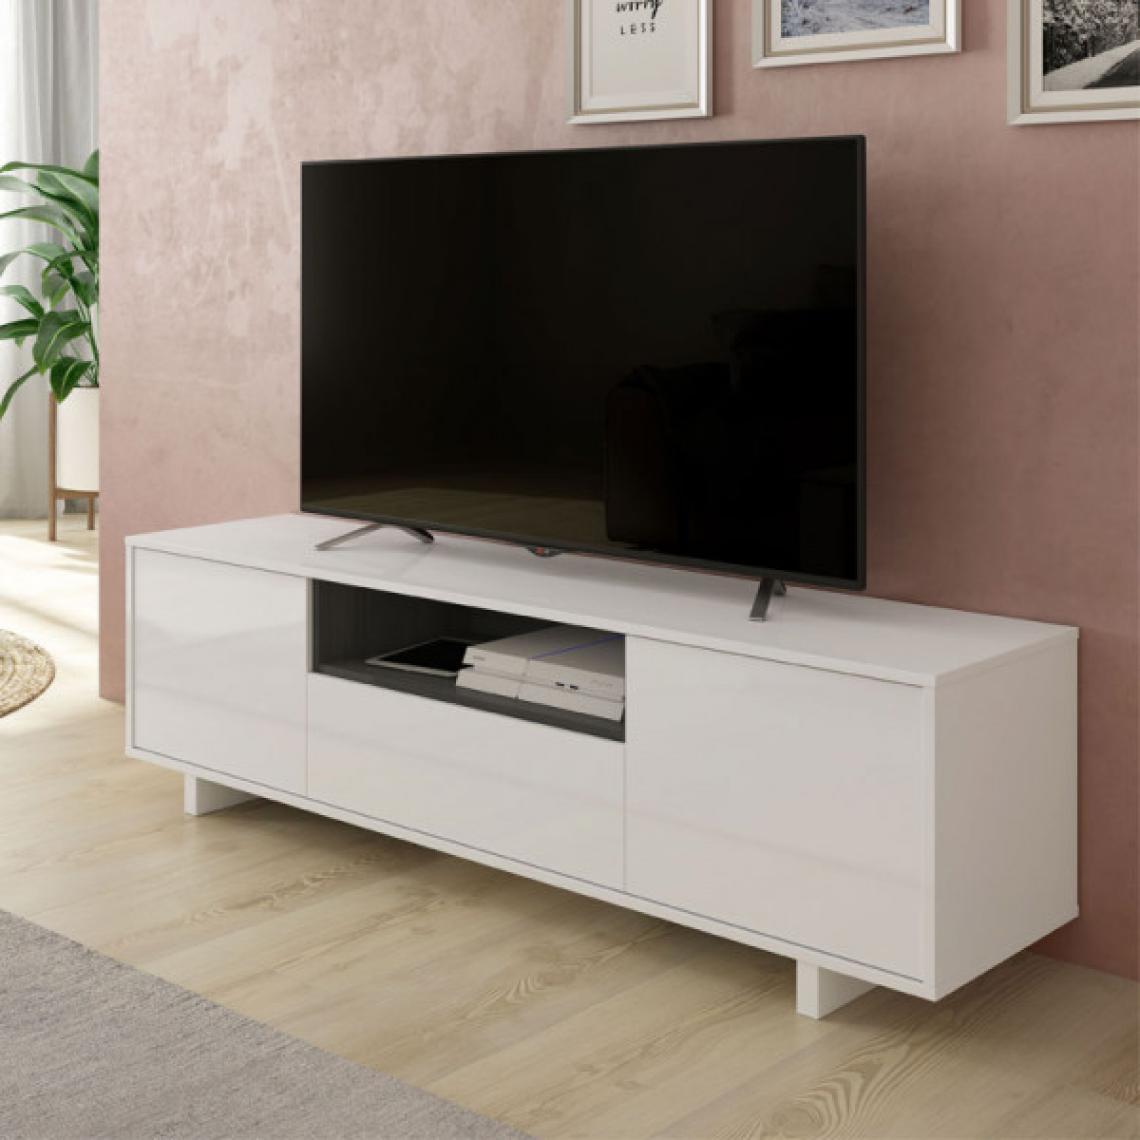 Dansmamaison - Meuble TV 3 portes Blanc/Gris - ZIARA - L 150 x l 41 x H 46 cm - Meubles TV, Hi-Fi